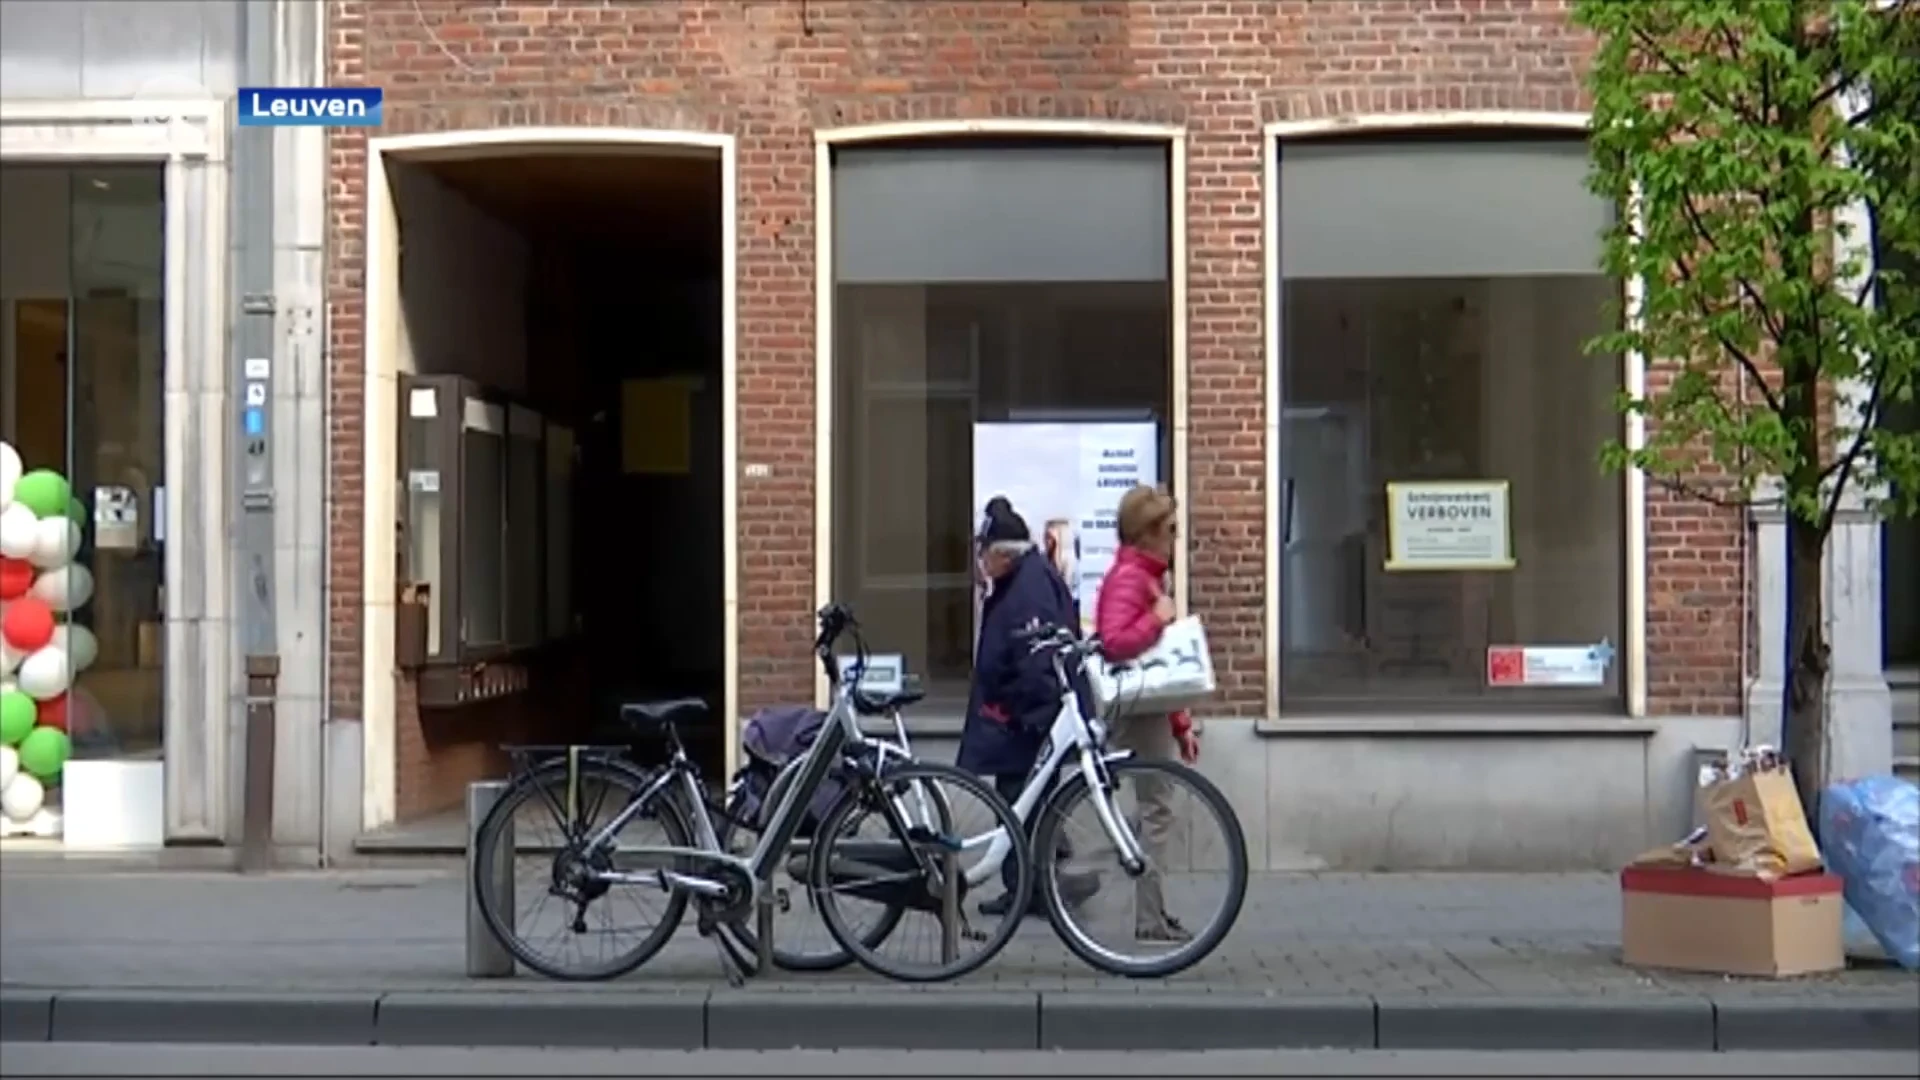 Leegstand in Leuven daalt tegenover vorig jaar maar blijft wel hoog: meer dan 1 op de 10 panden staat nog altijd leeg